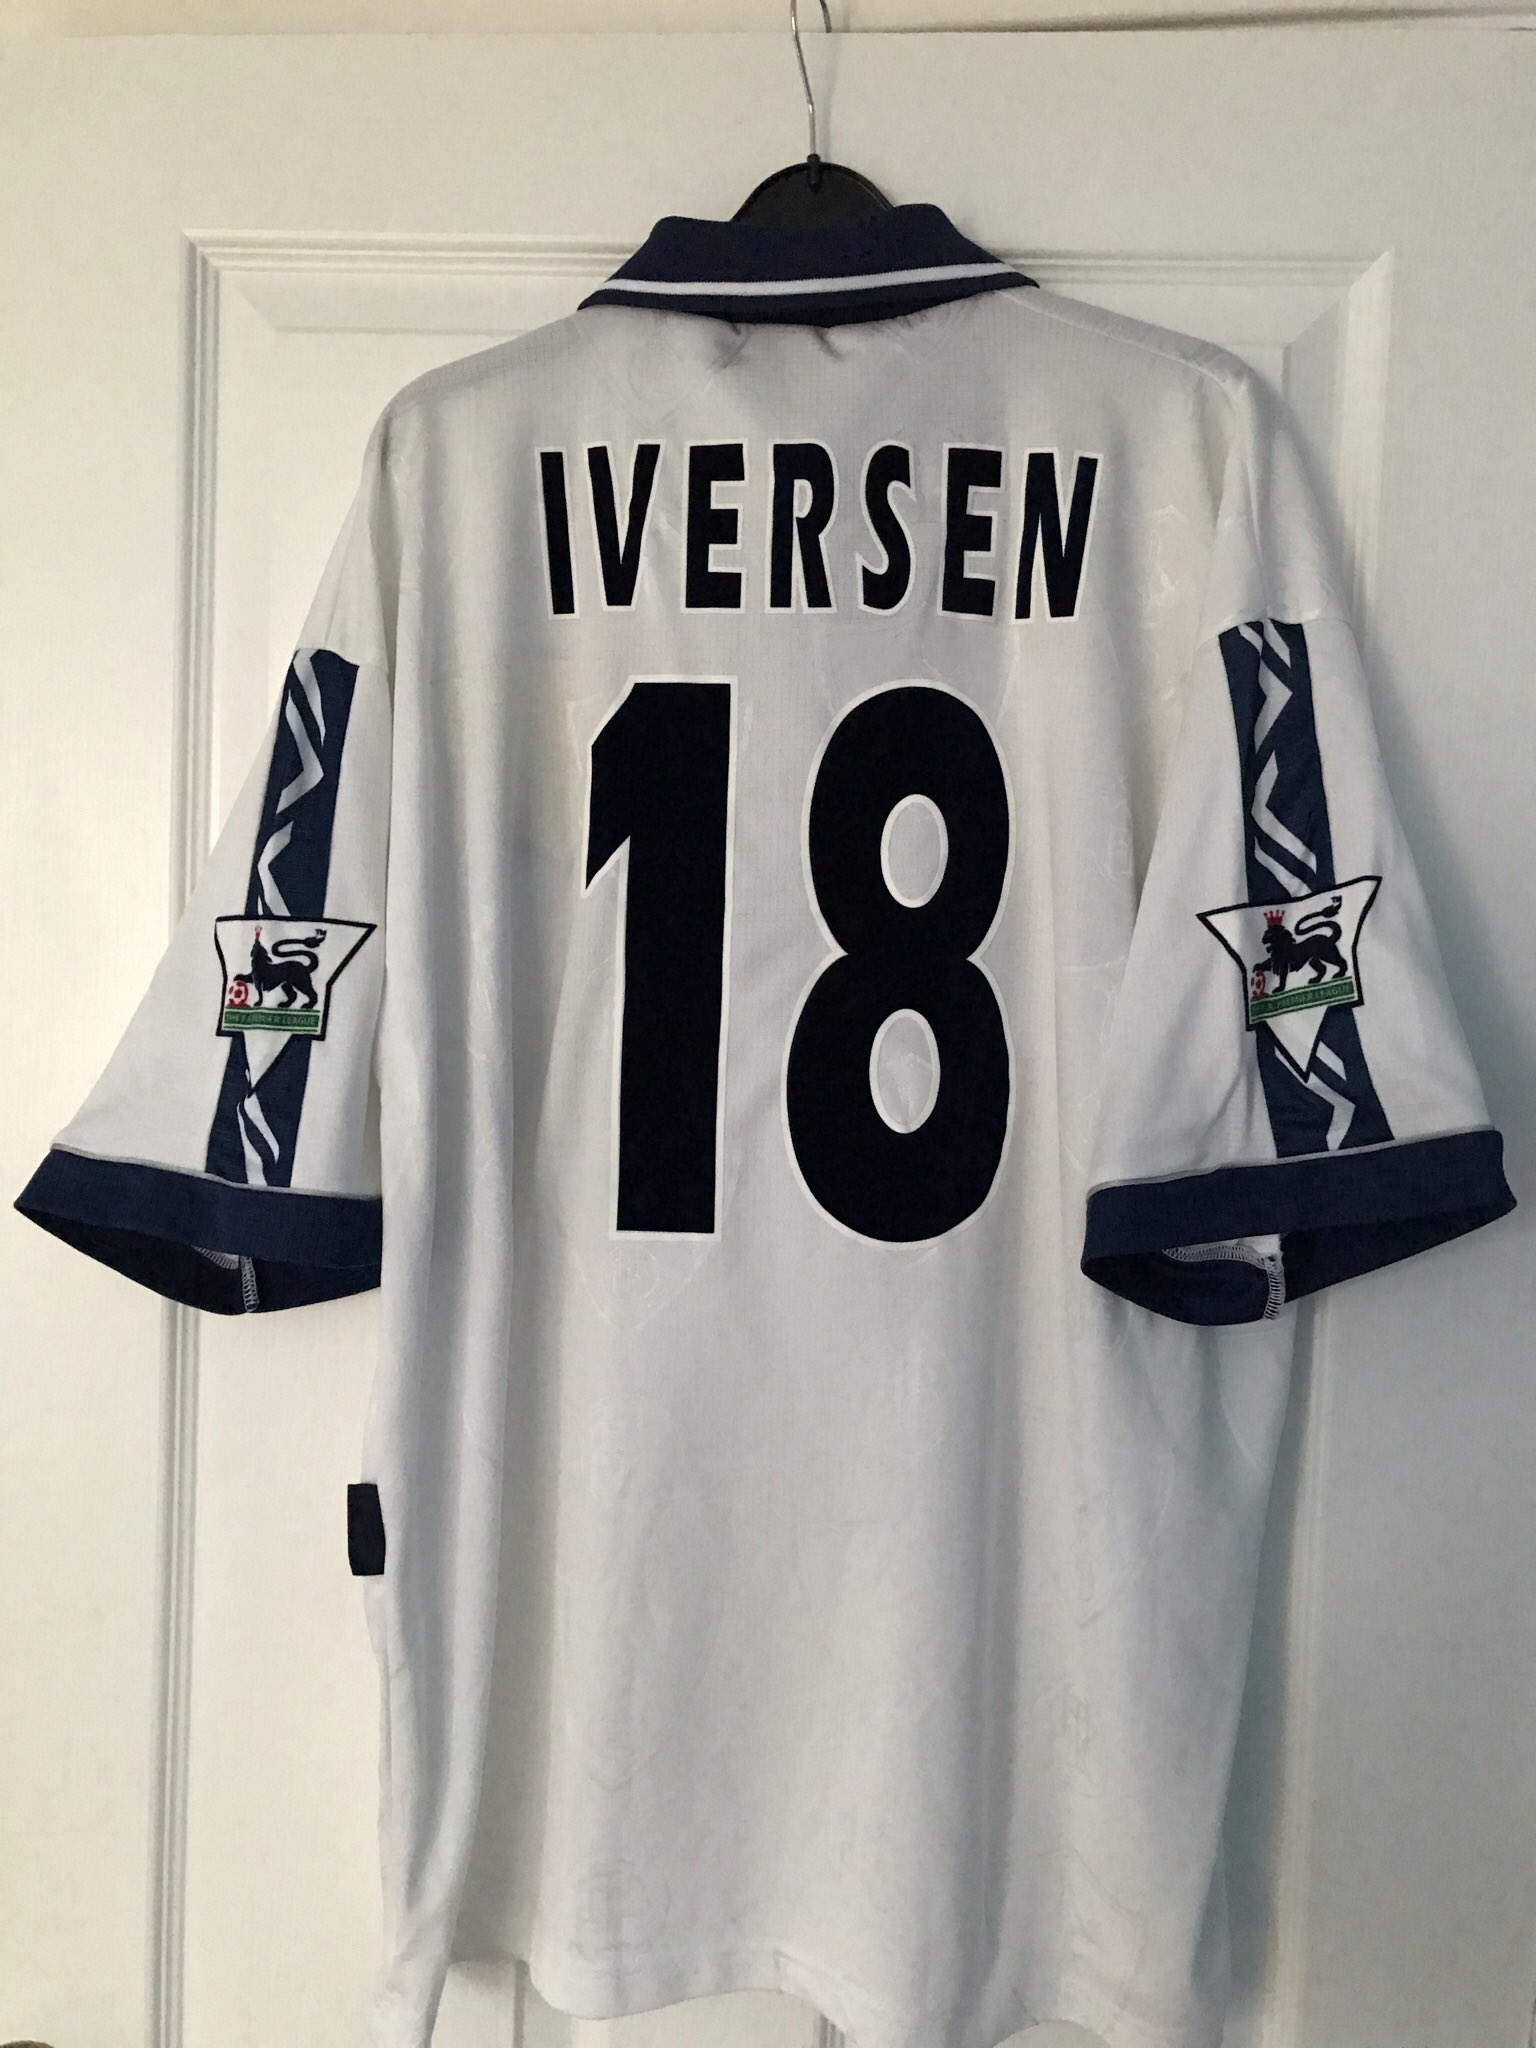 Happy birthday to Steffen Iversen 